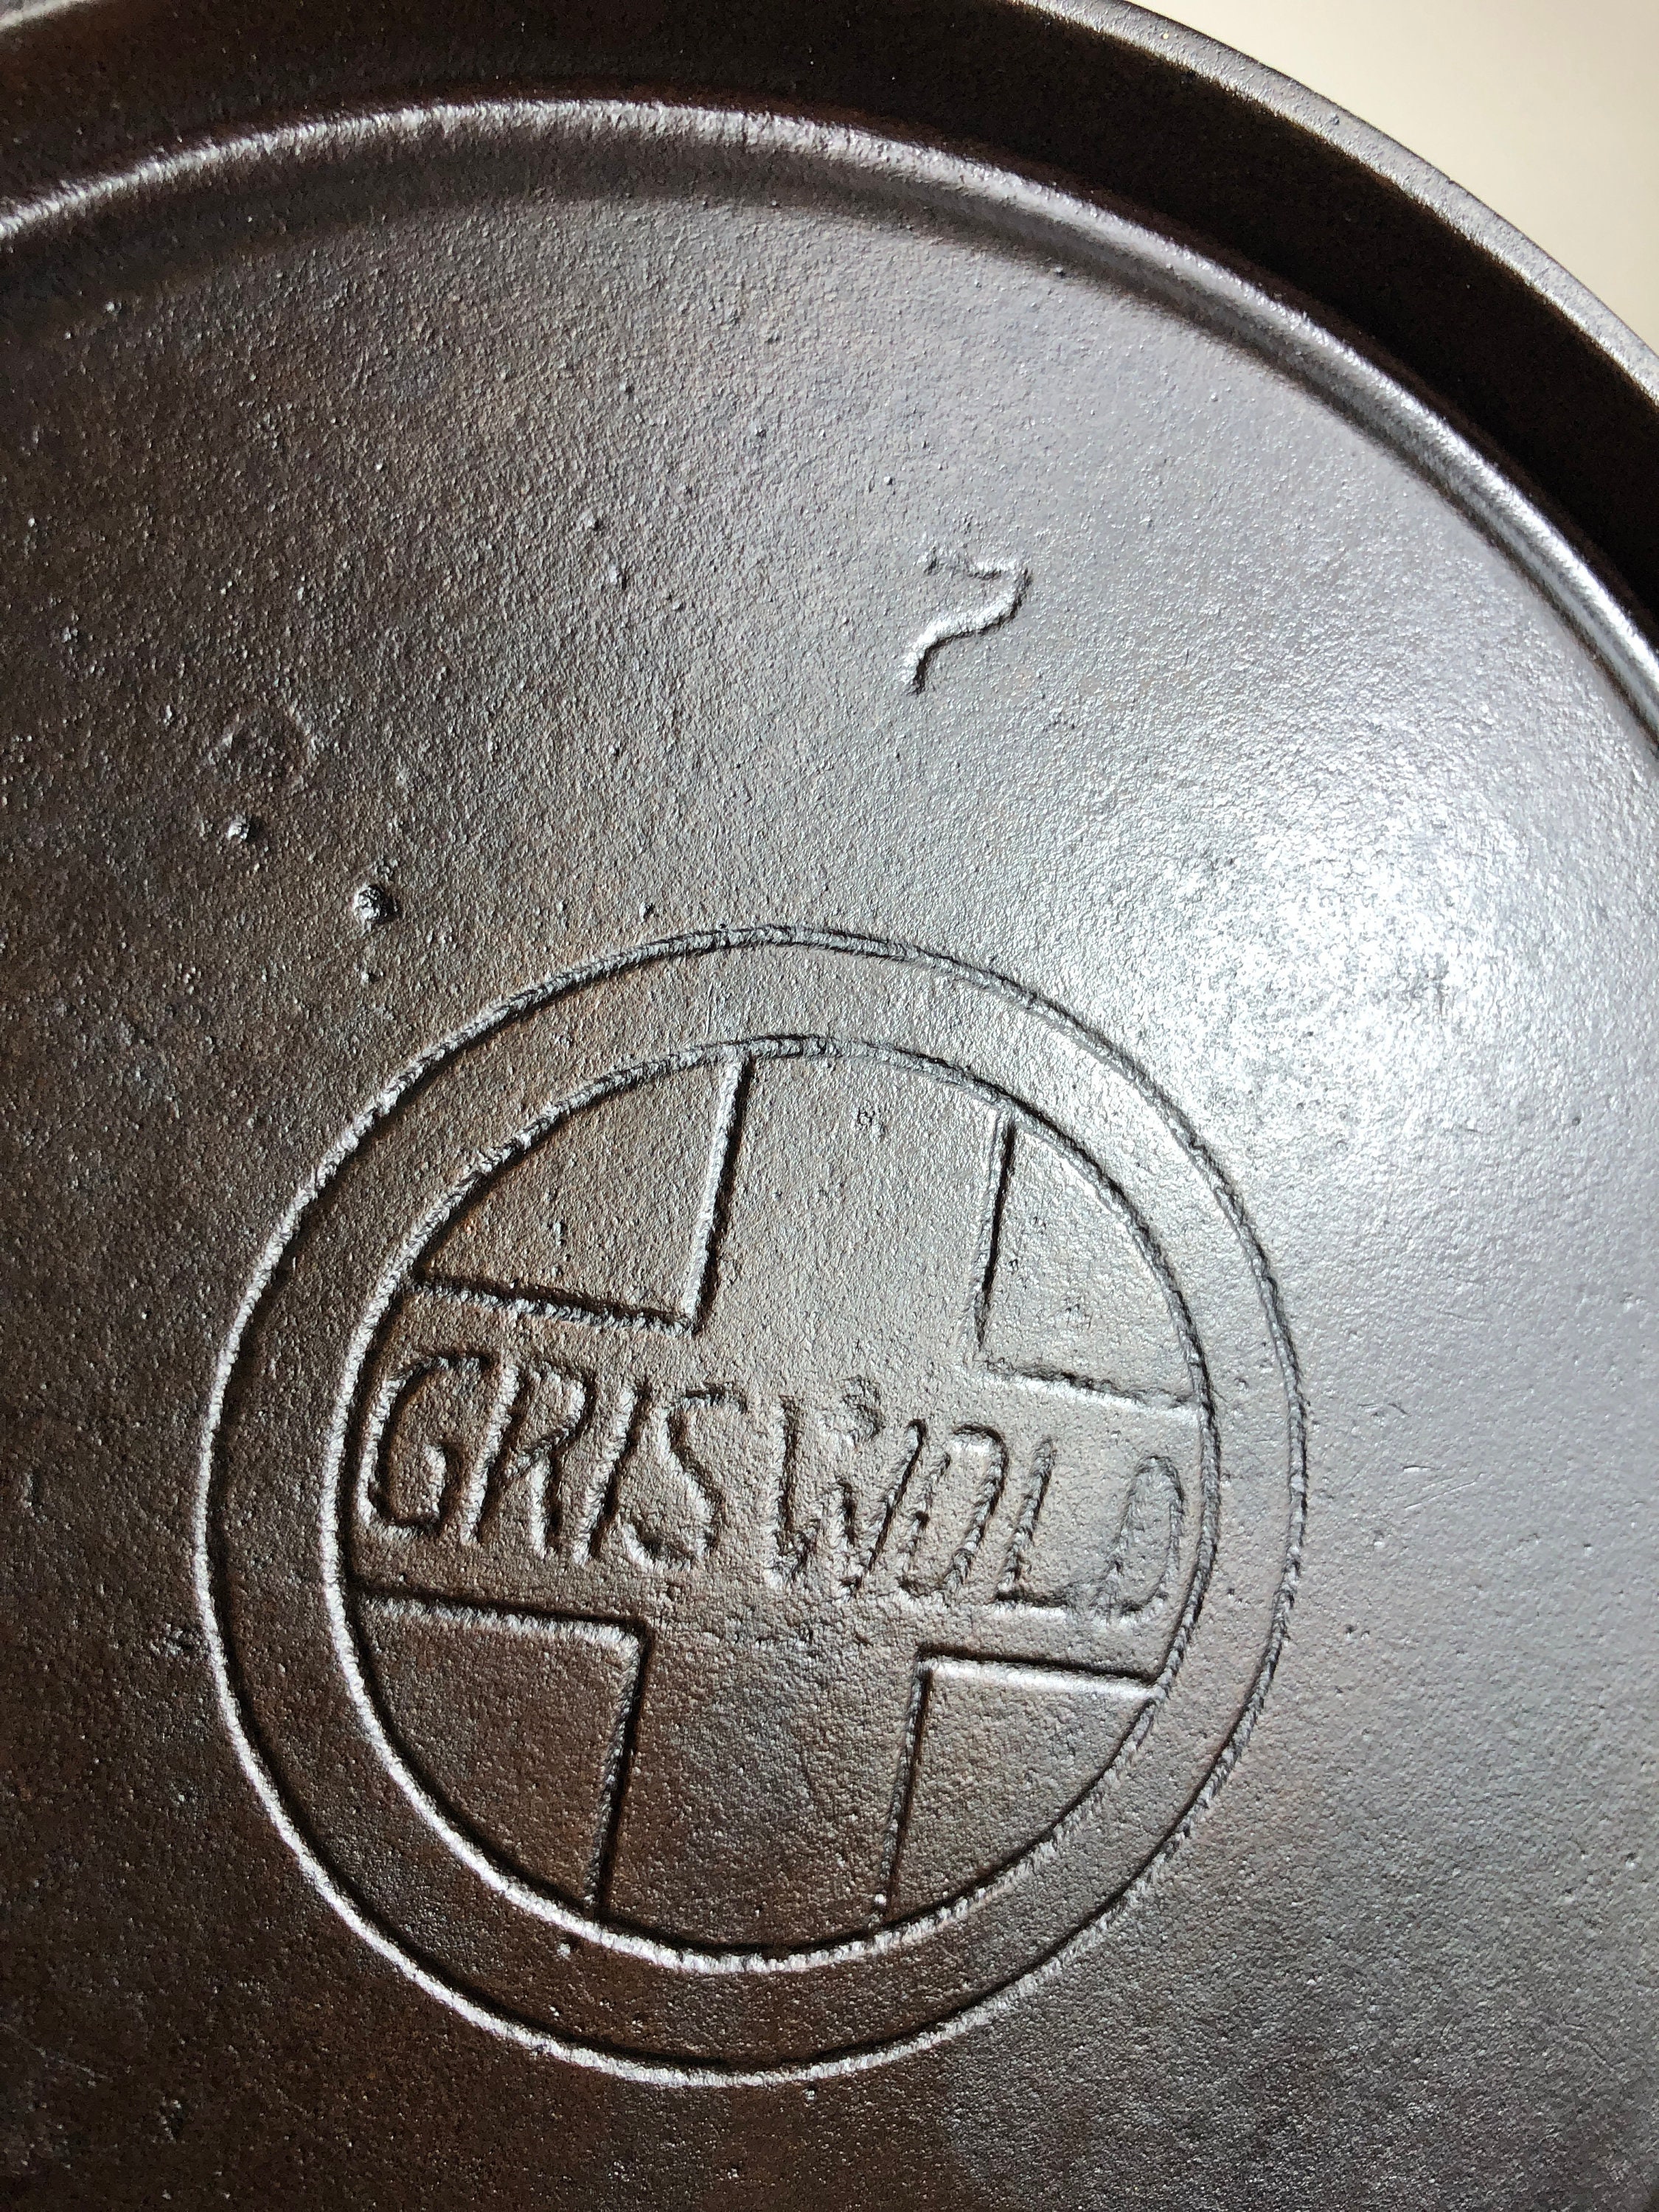 RARE Griswold 13 Slant Logo Cast Iron Skillet 